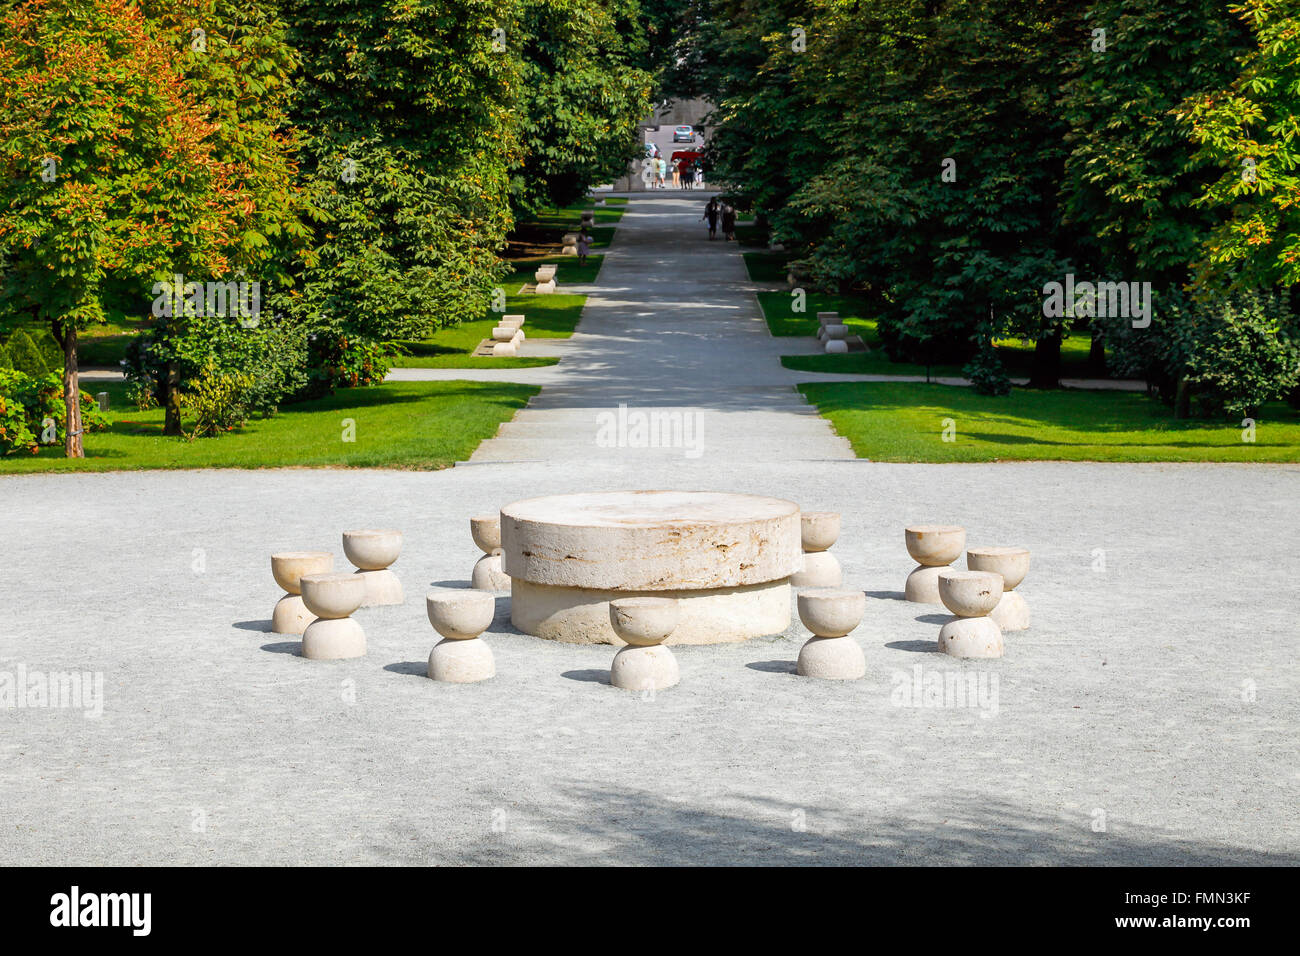 La Table du silence une sculpture de Constantin Brancusi à Targu Jiu, Roumanie Banque D'Images